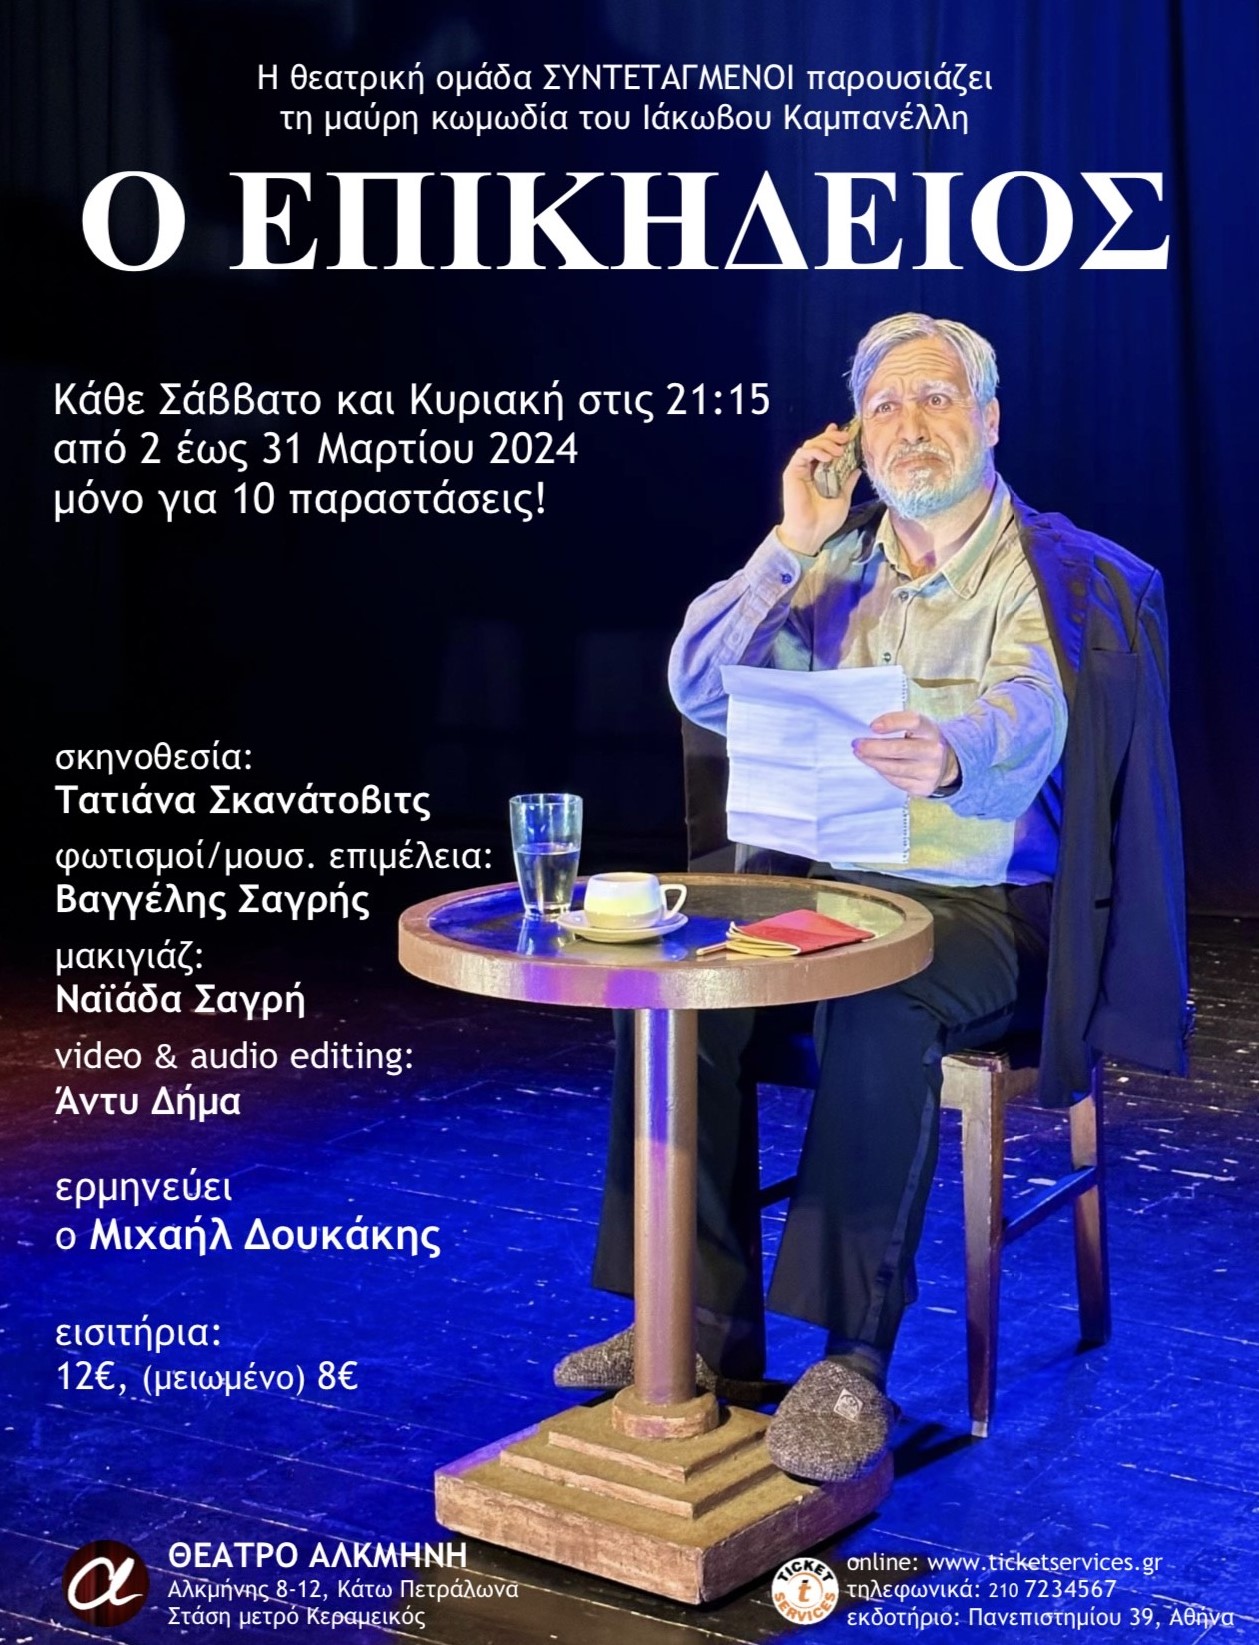 Ο Μιχαήλ Δουκάκης στα Παραπολιτικά για την θεατρική παράσταση «Ο Επικήδειος» του Ιάκωβου Καμπανέλλη